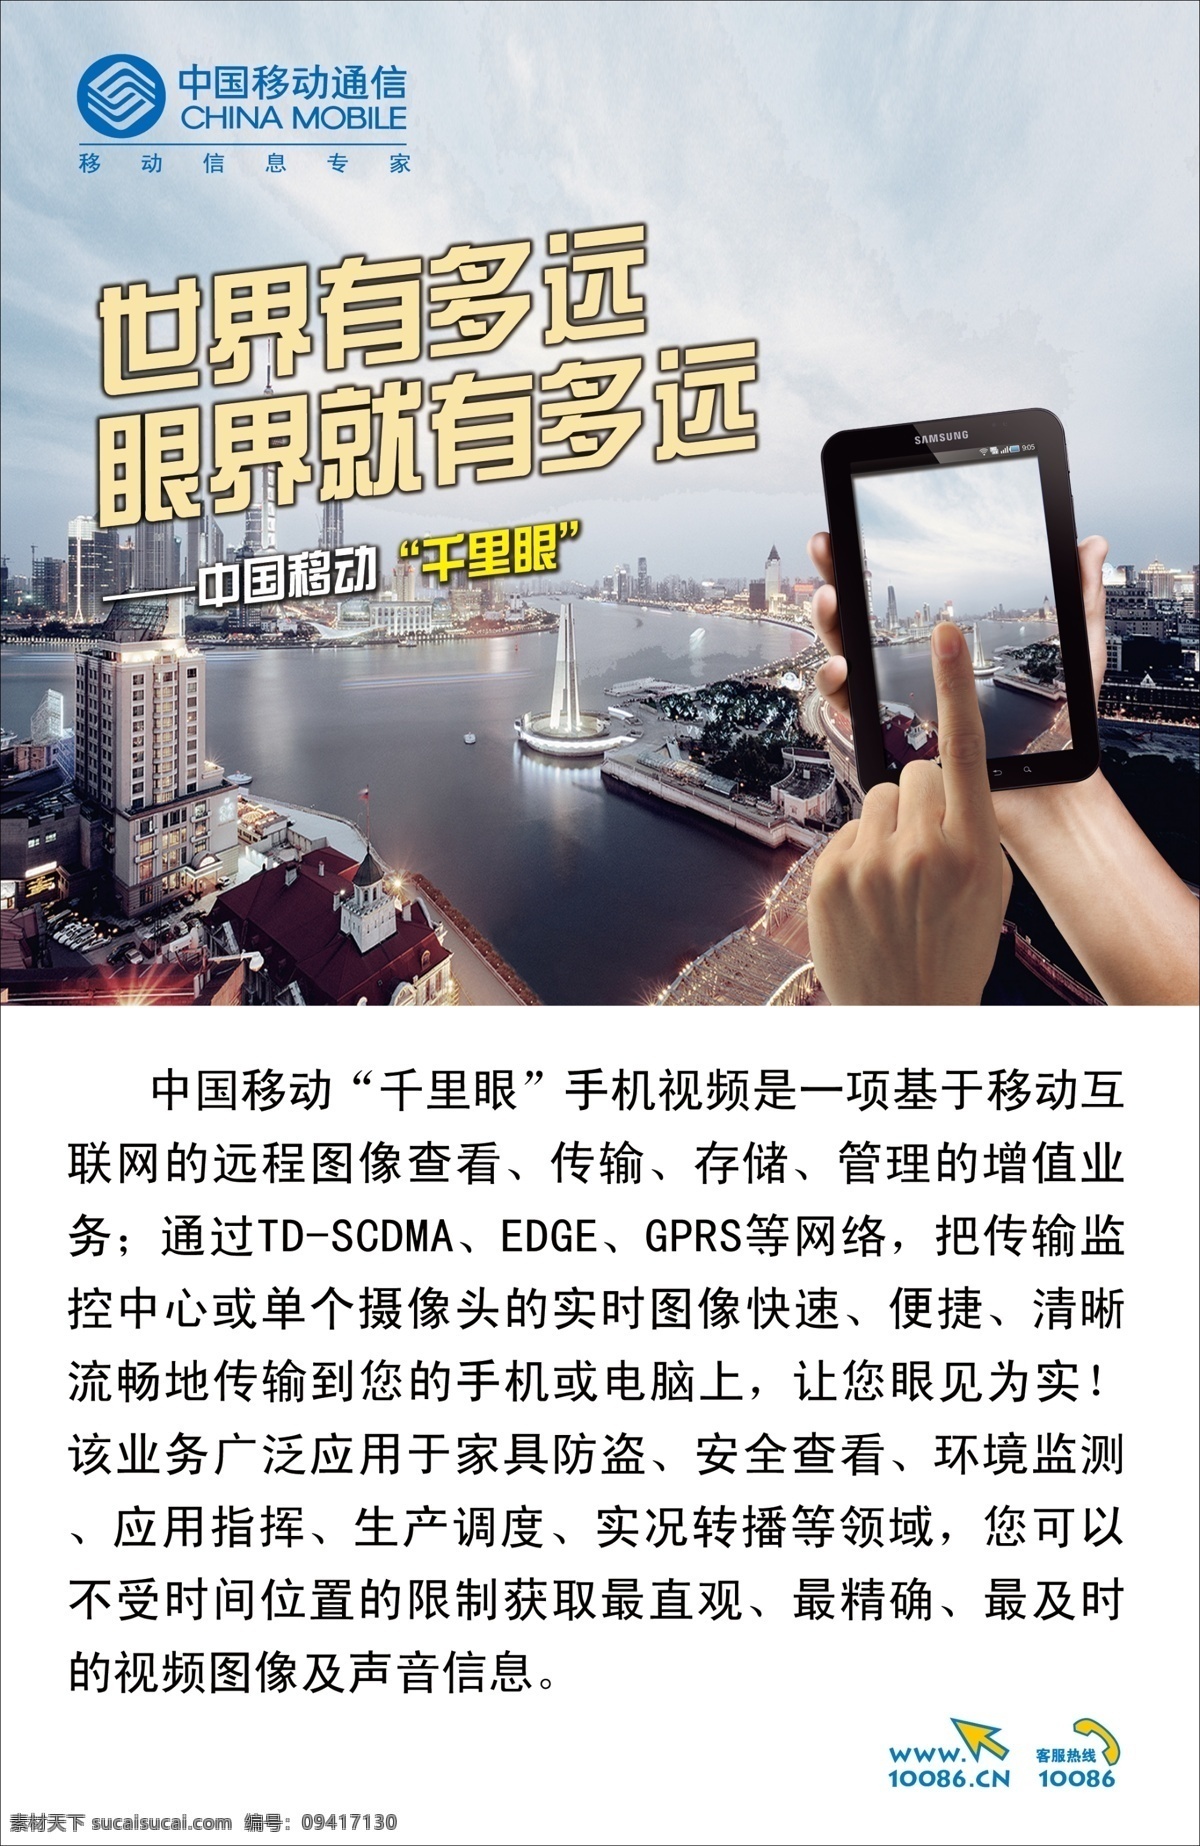 广告设计模板 广告宣传 手机视频 手指 源文件 中国移动 千里眼 世界有多远 眼界就有多远 上海全景 远程图像查看 宣传海报 宣传单 彩页 dm